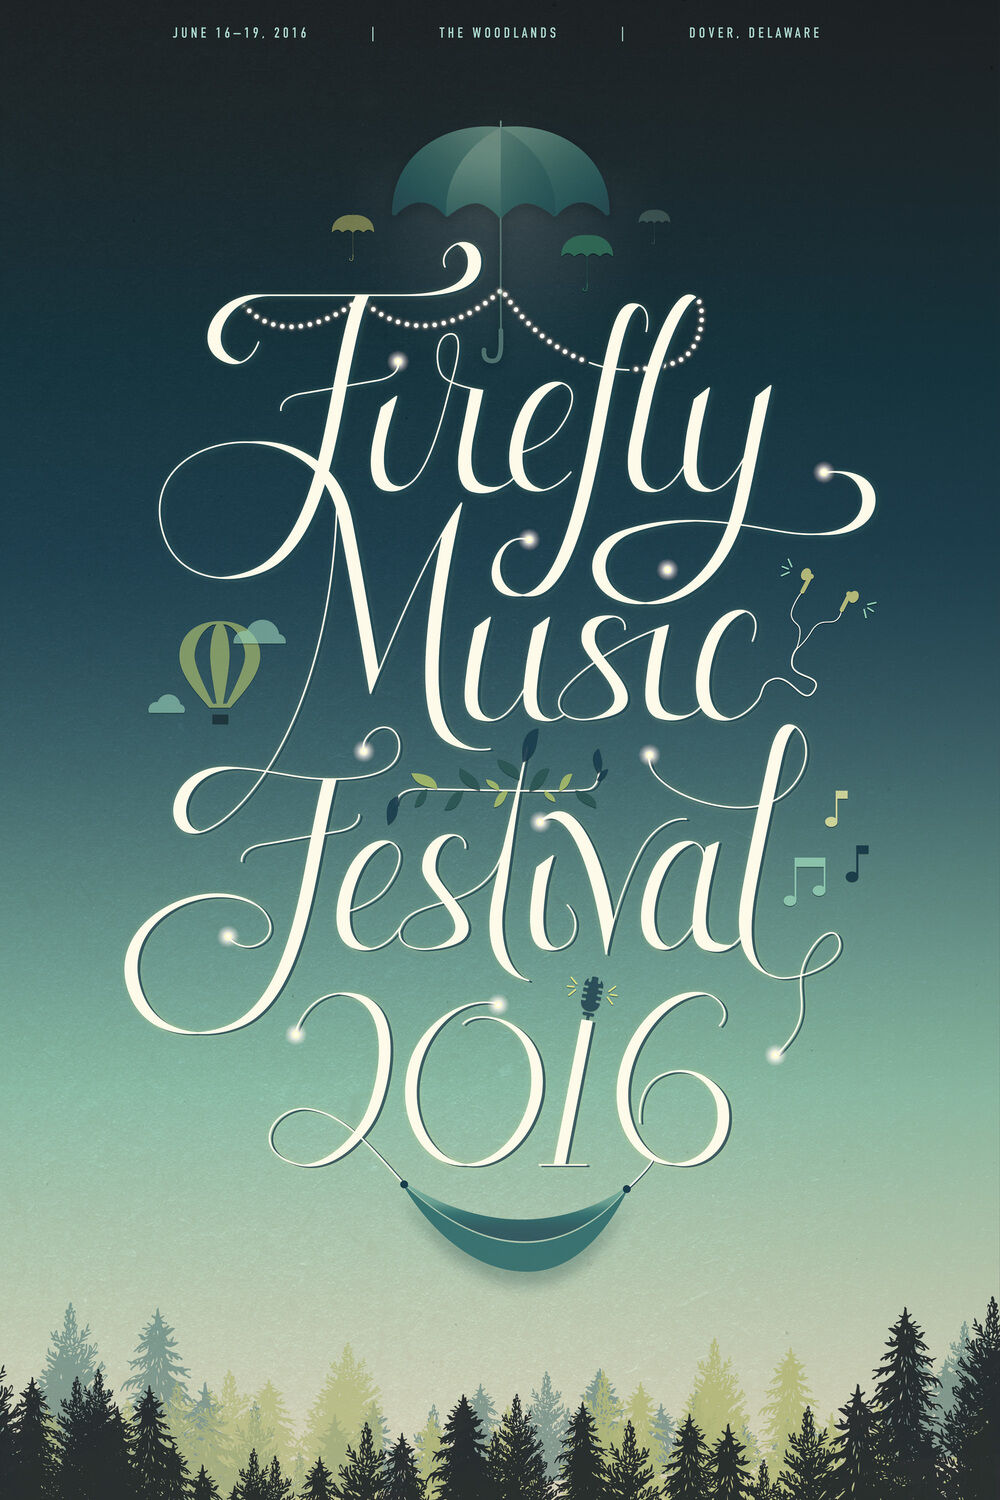 firefly music festival poster